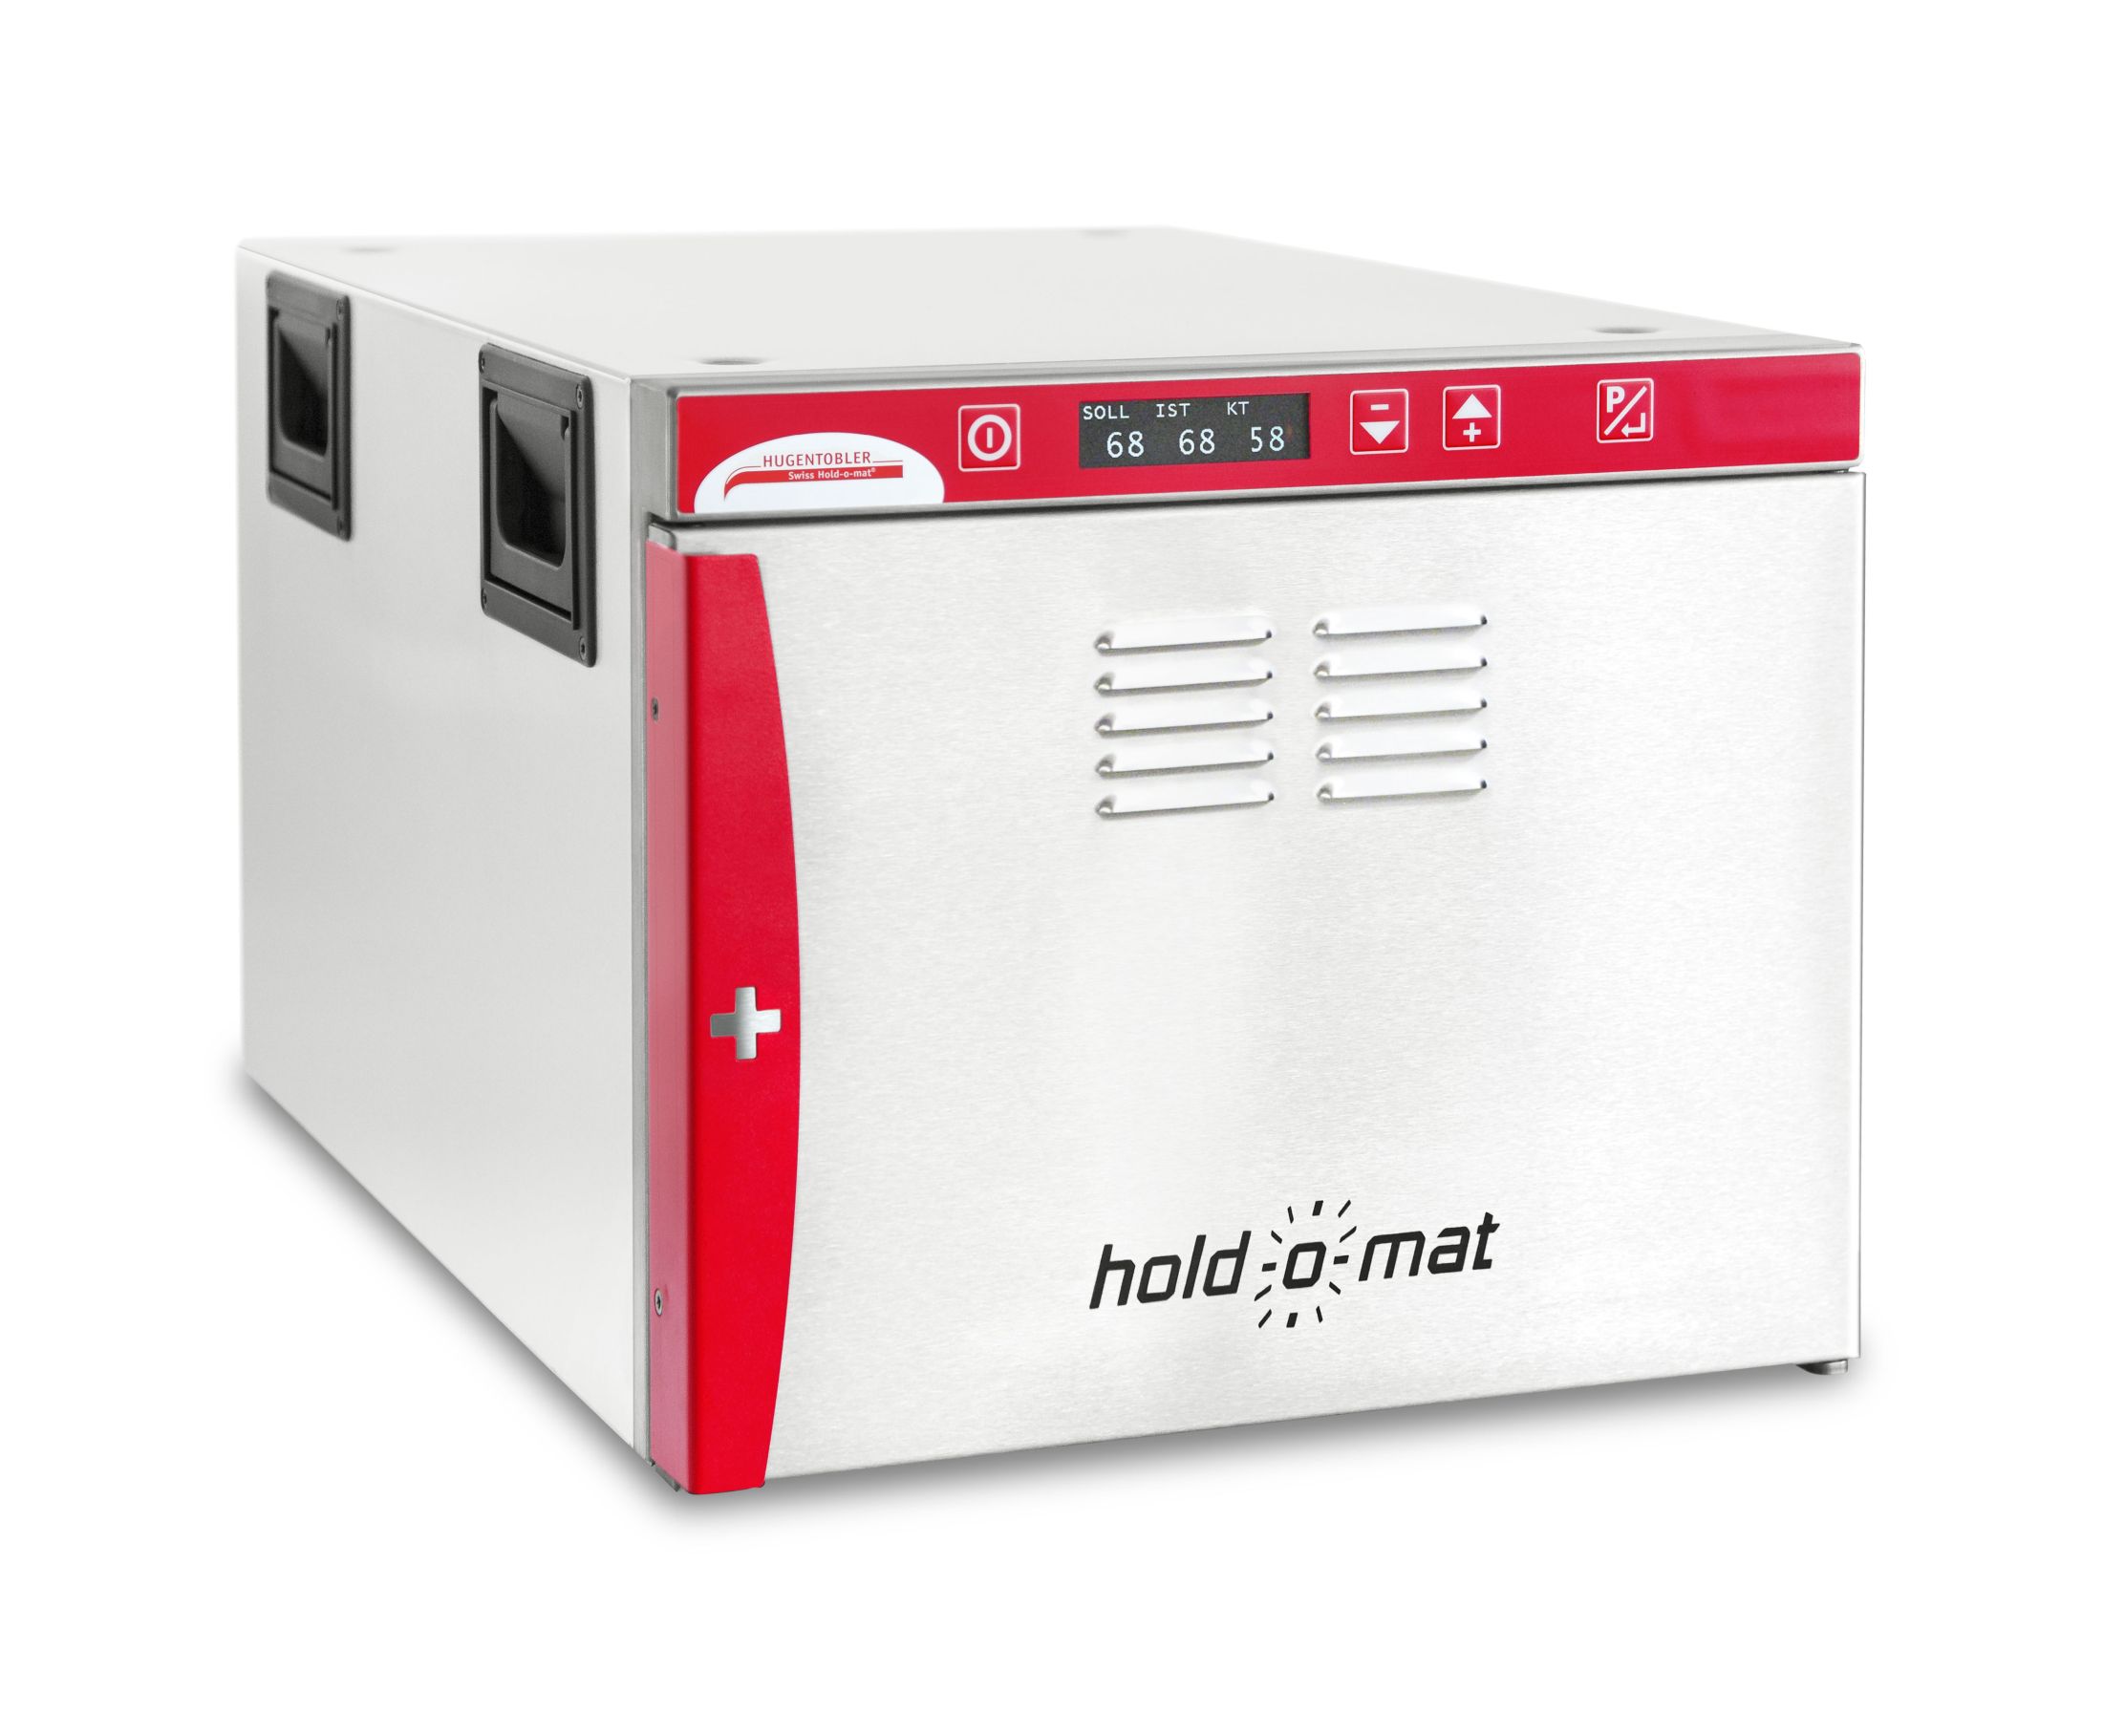 Hugentobler Holdomat Hold-o-mat 311 | ohne Kerntemperatursonde (optional erhältlich)